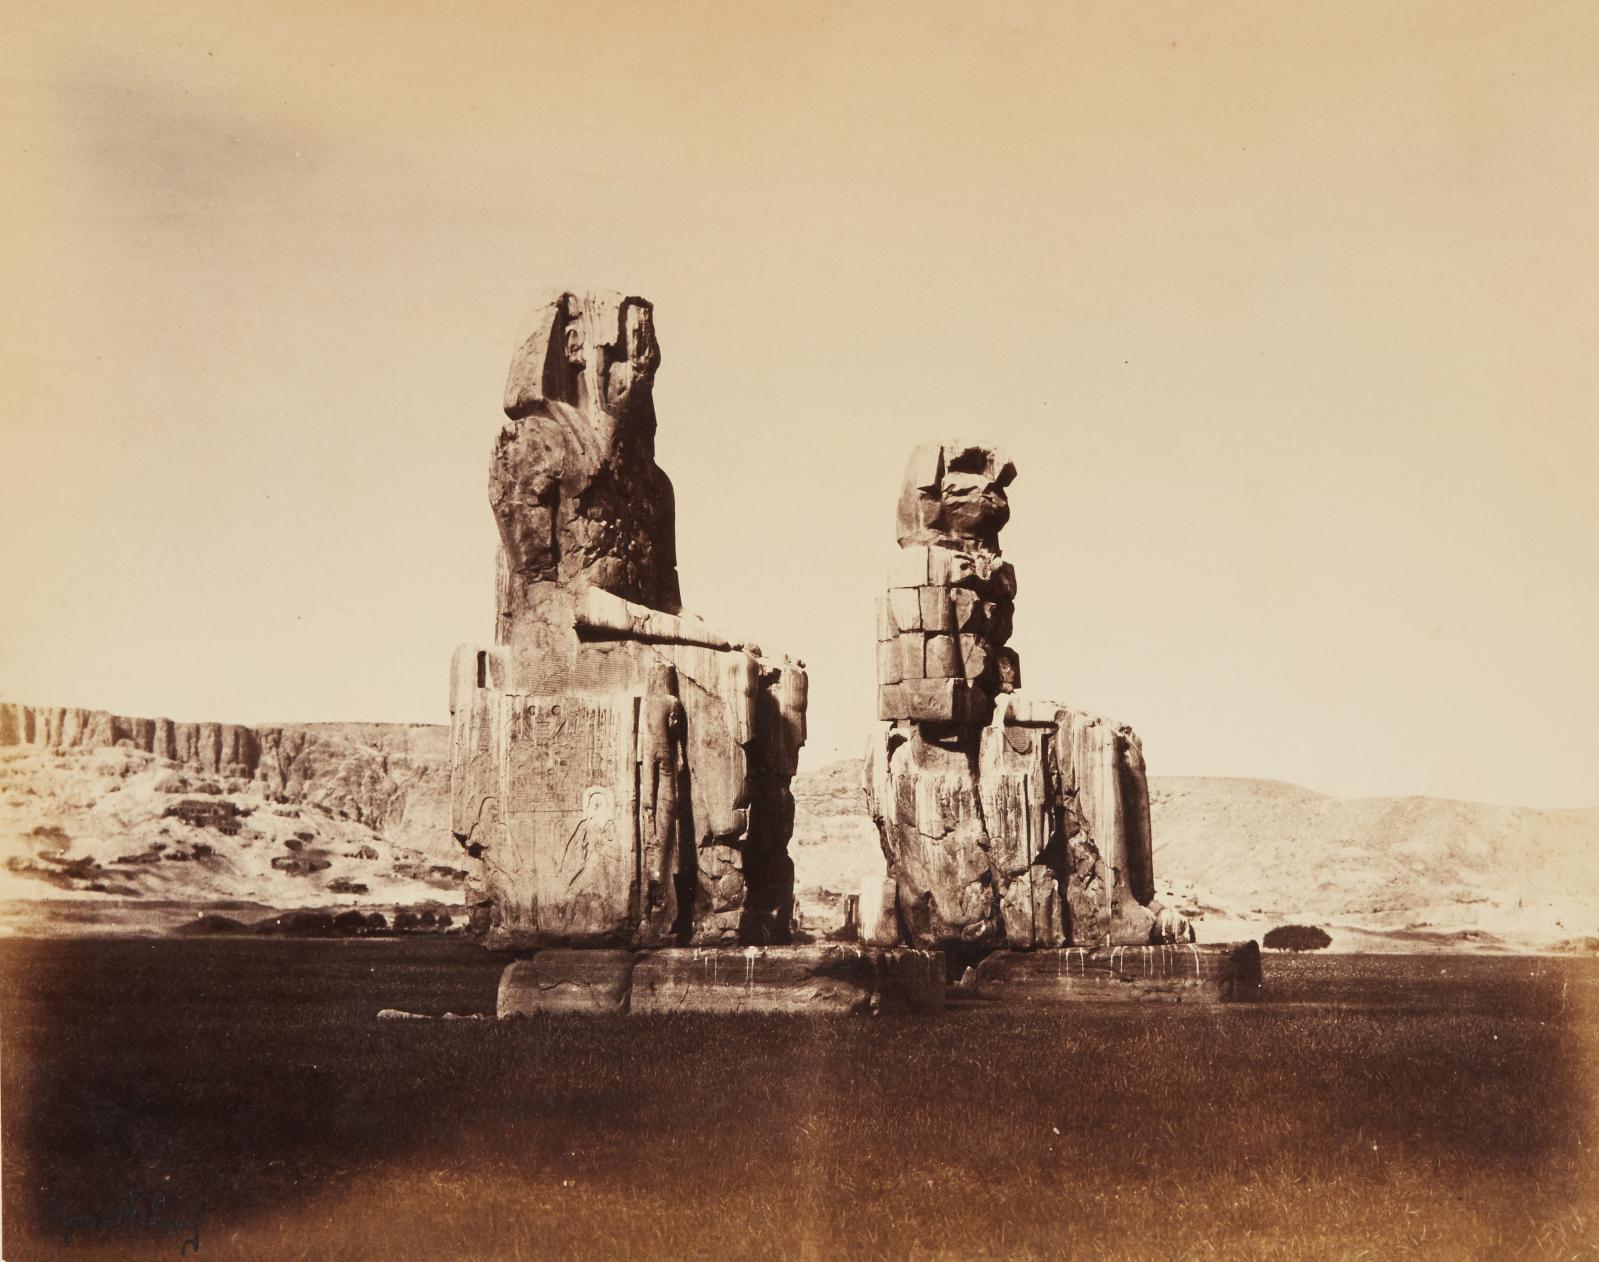 Gustave le Gray, Colosses de Memnon à Thèbes, épreuve sur papier albuminé, titre légendé sur le bas du montage, tampon signature bleu sur l’épreuve, 3